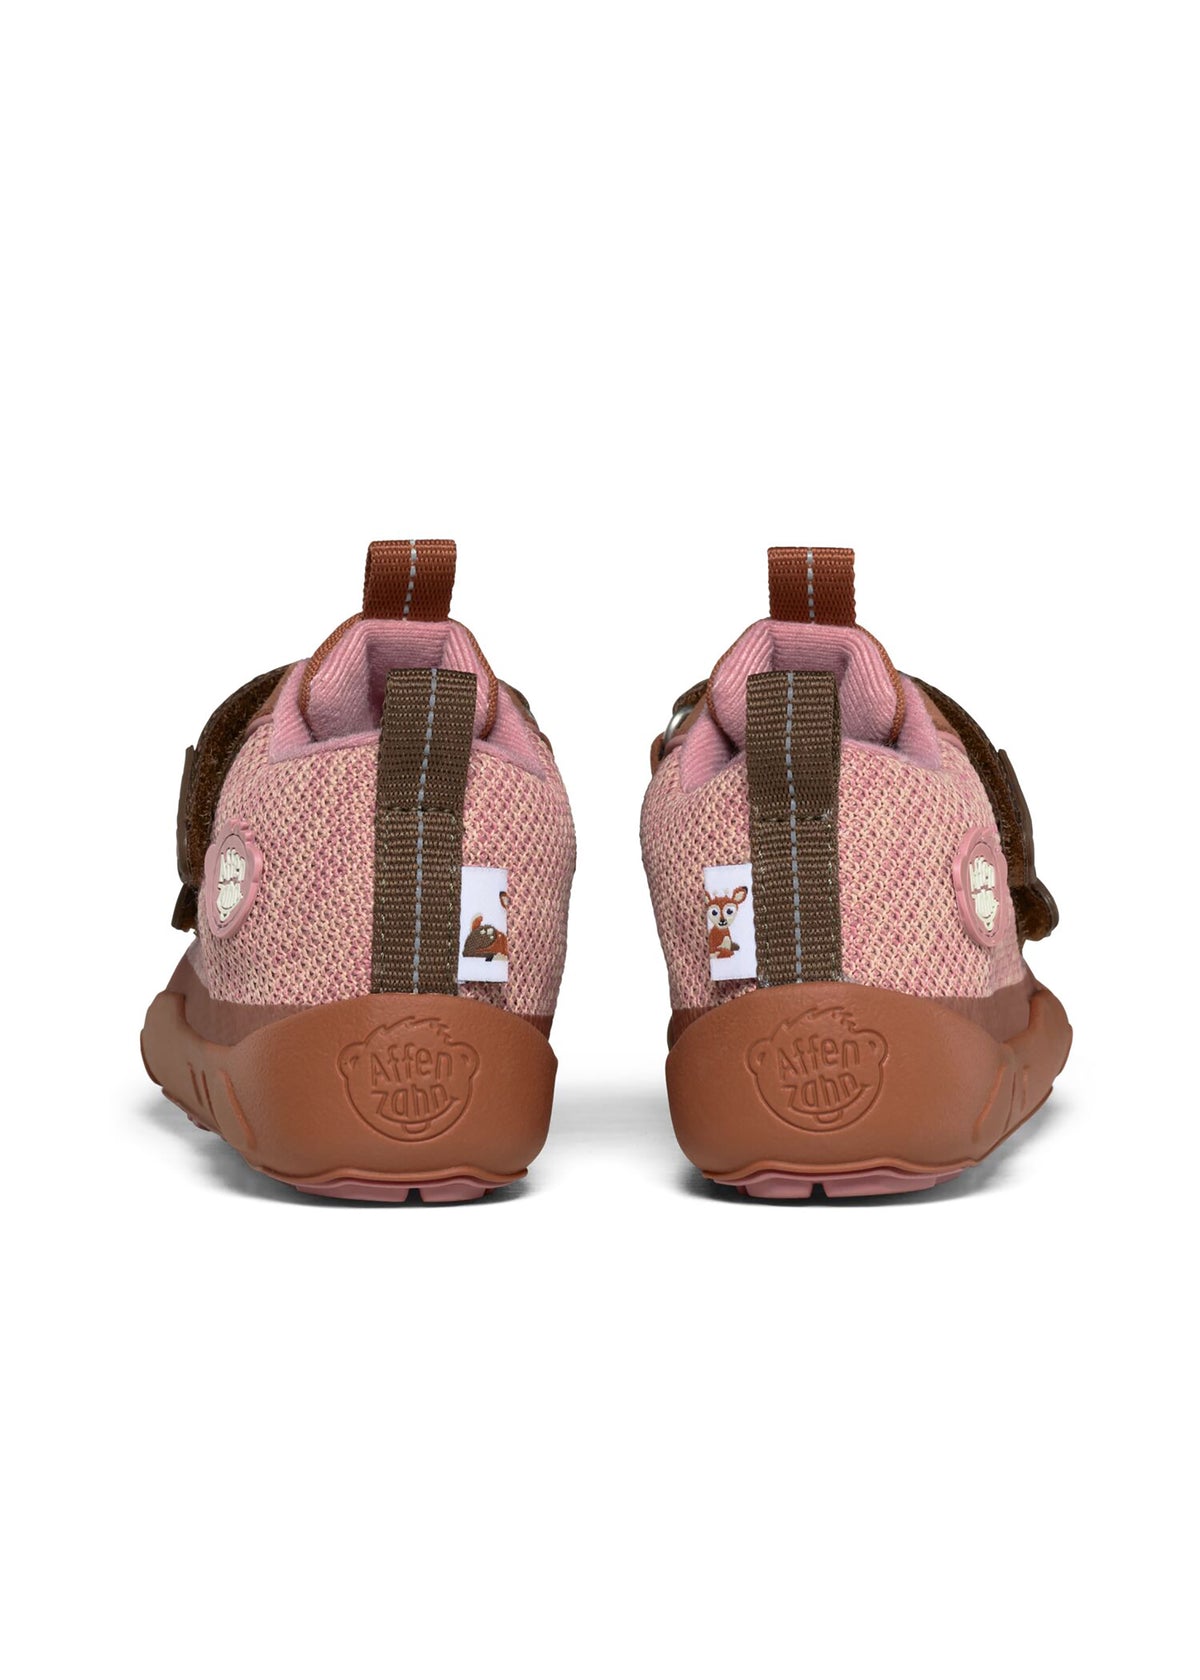 Barfotaskor för barn - Happy Knit Deer, mellansäsongsskor med TEX-membran - rosa, brun